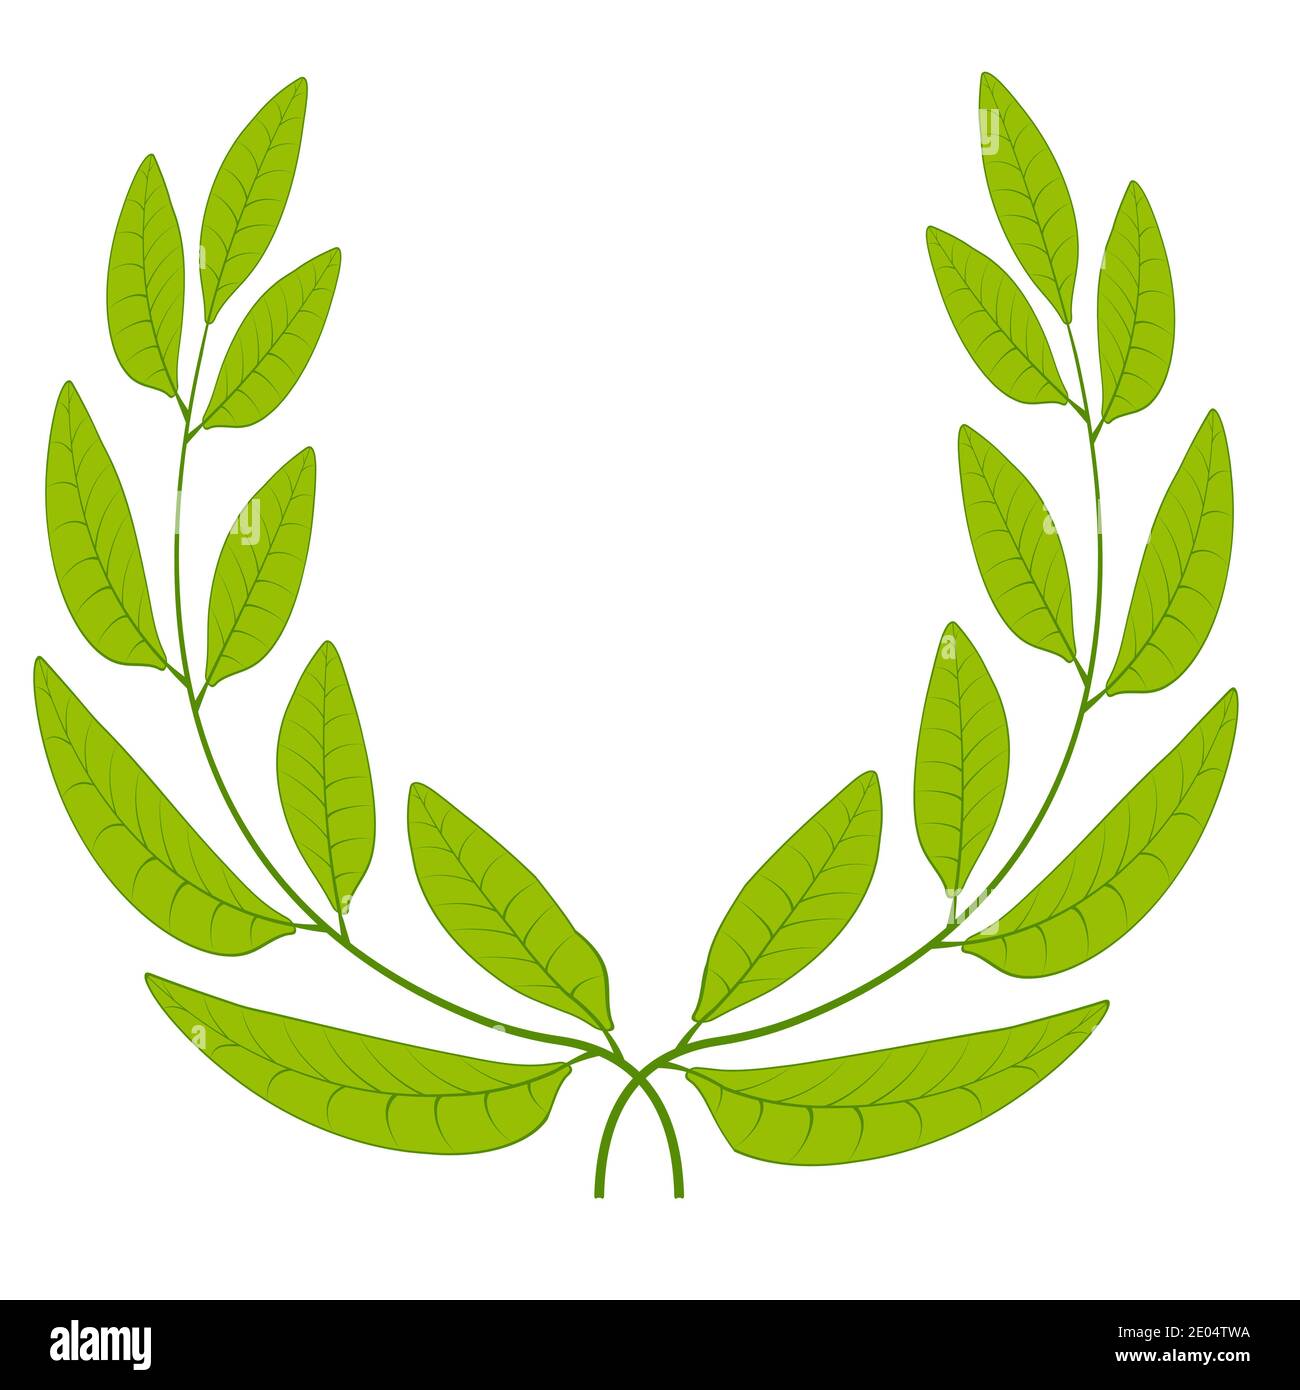 Lorbeerkranz grüne Blätter Symbol Symbol für Ruhm, Sieg oder Frieden, Vektor Lorbeerkranz Zeichen für Sieg und Triumph Stock Vektor